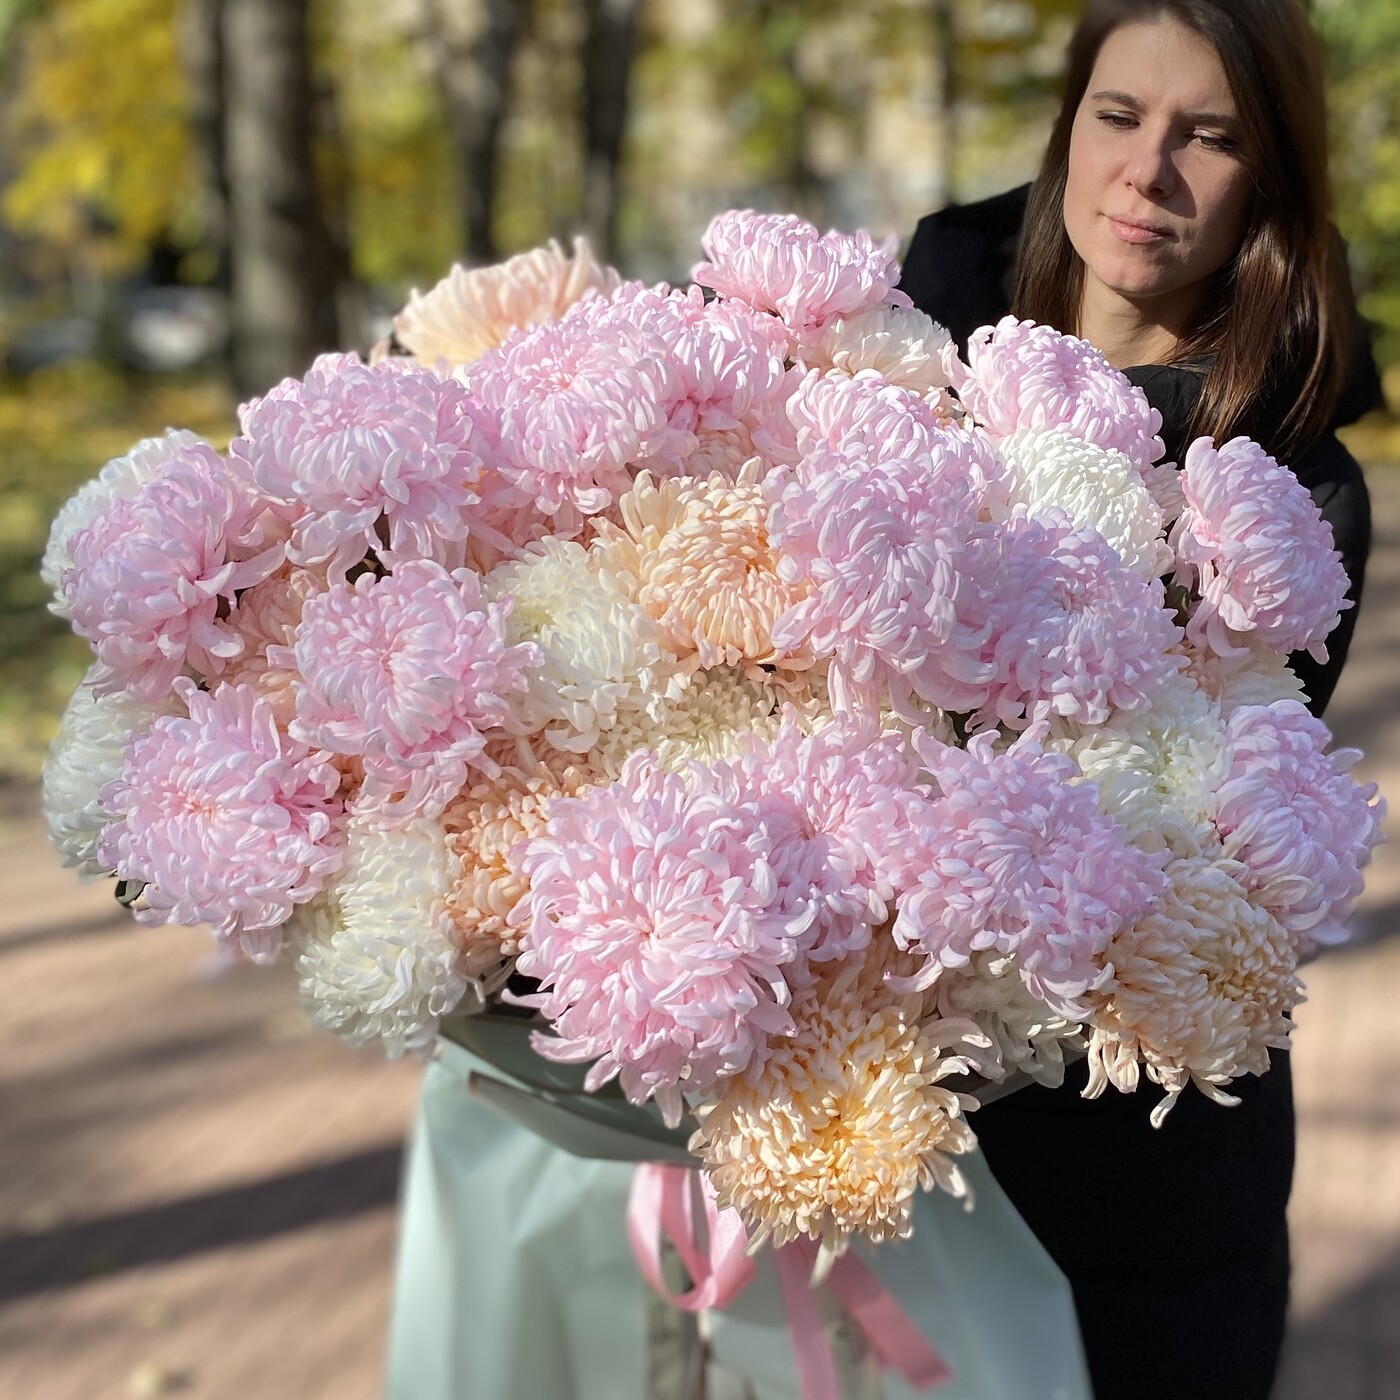 Роскошный букет из разноцветных хризантем до 25000 руб на День Восьмого Марта